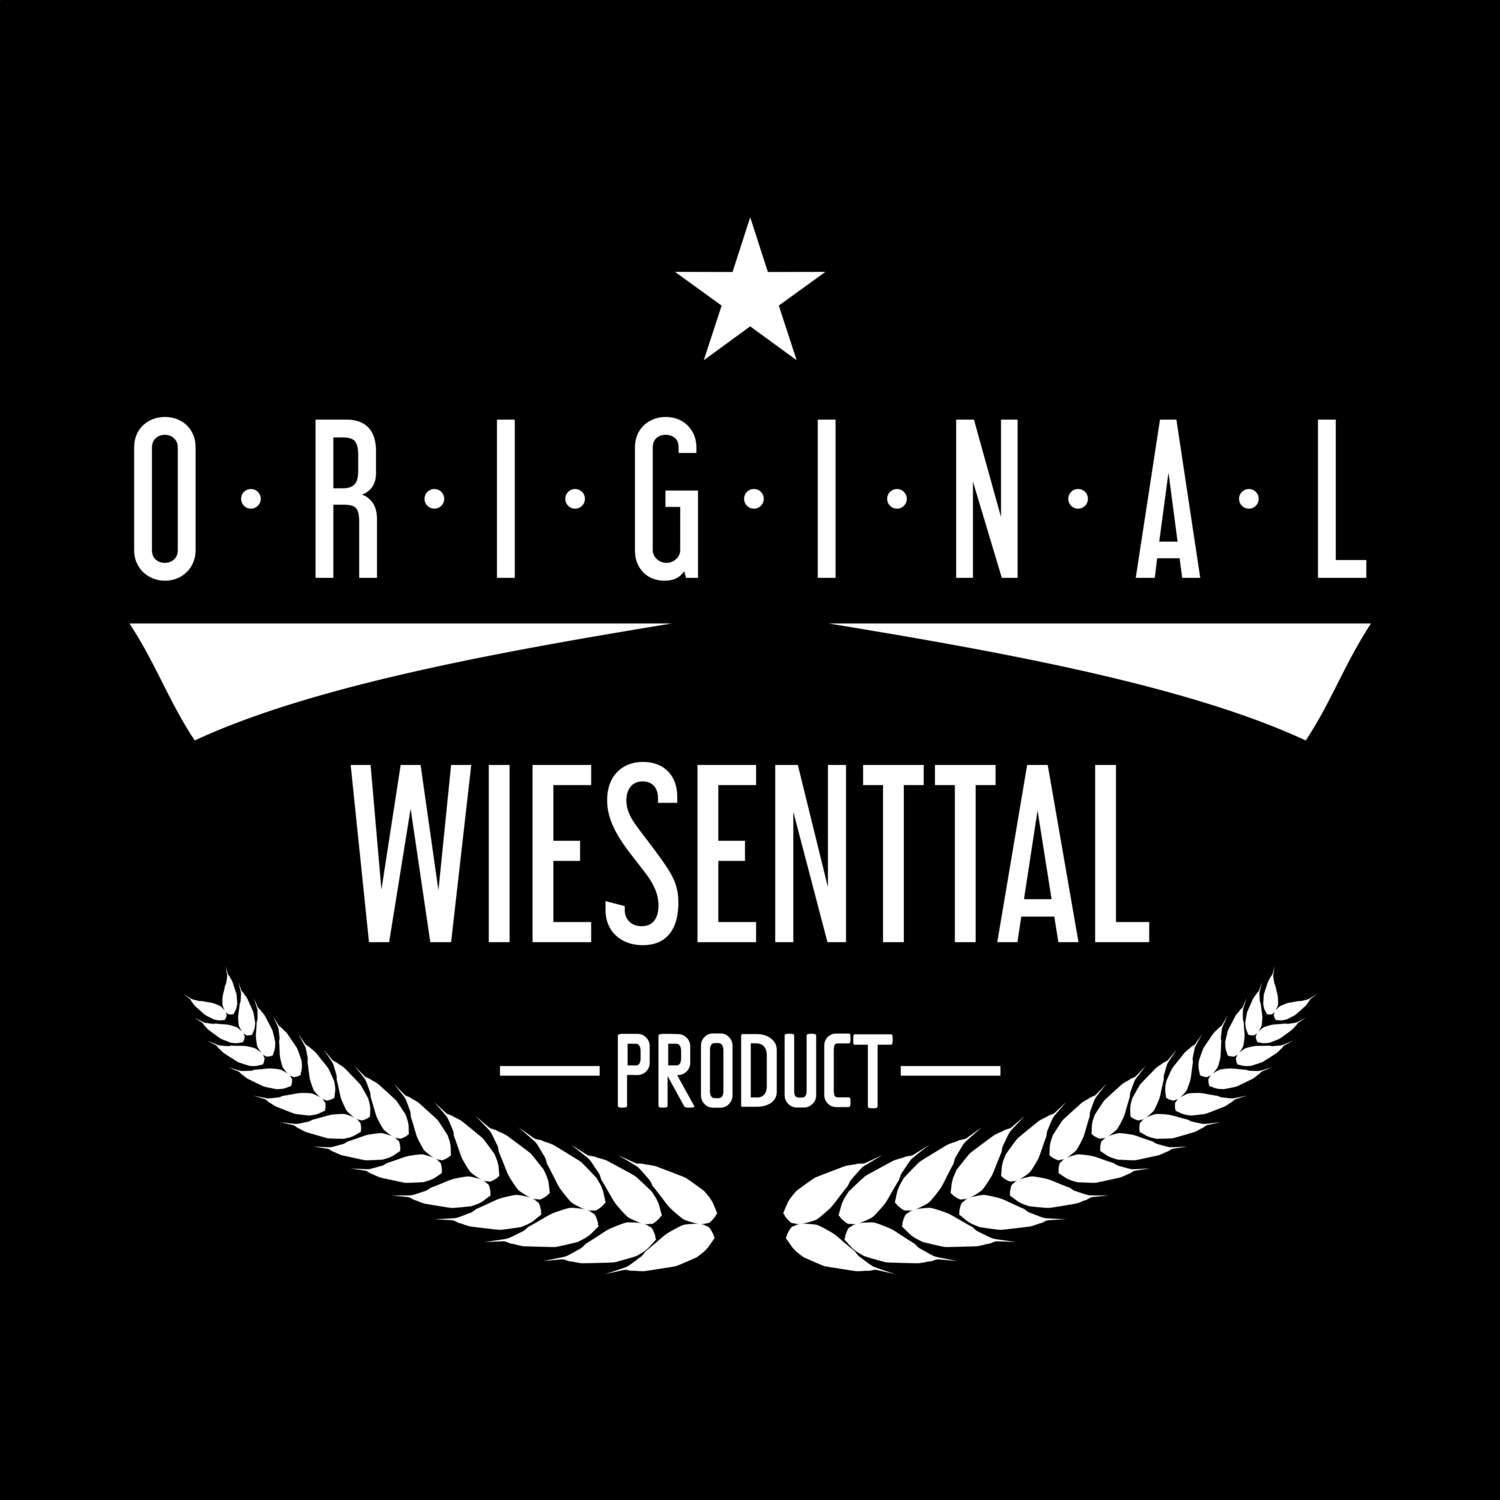 Wiesenttal T-Shirt »Original Product«